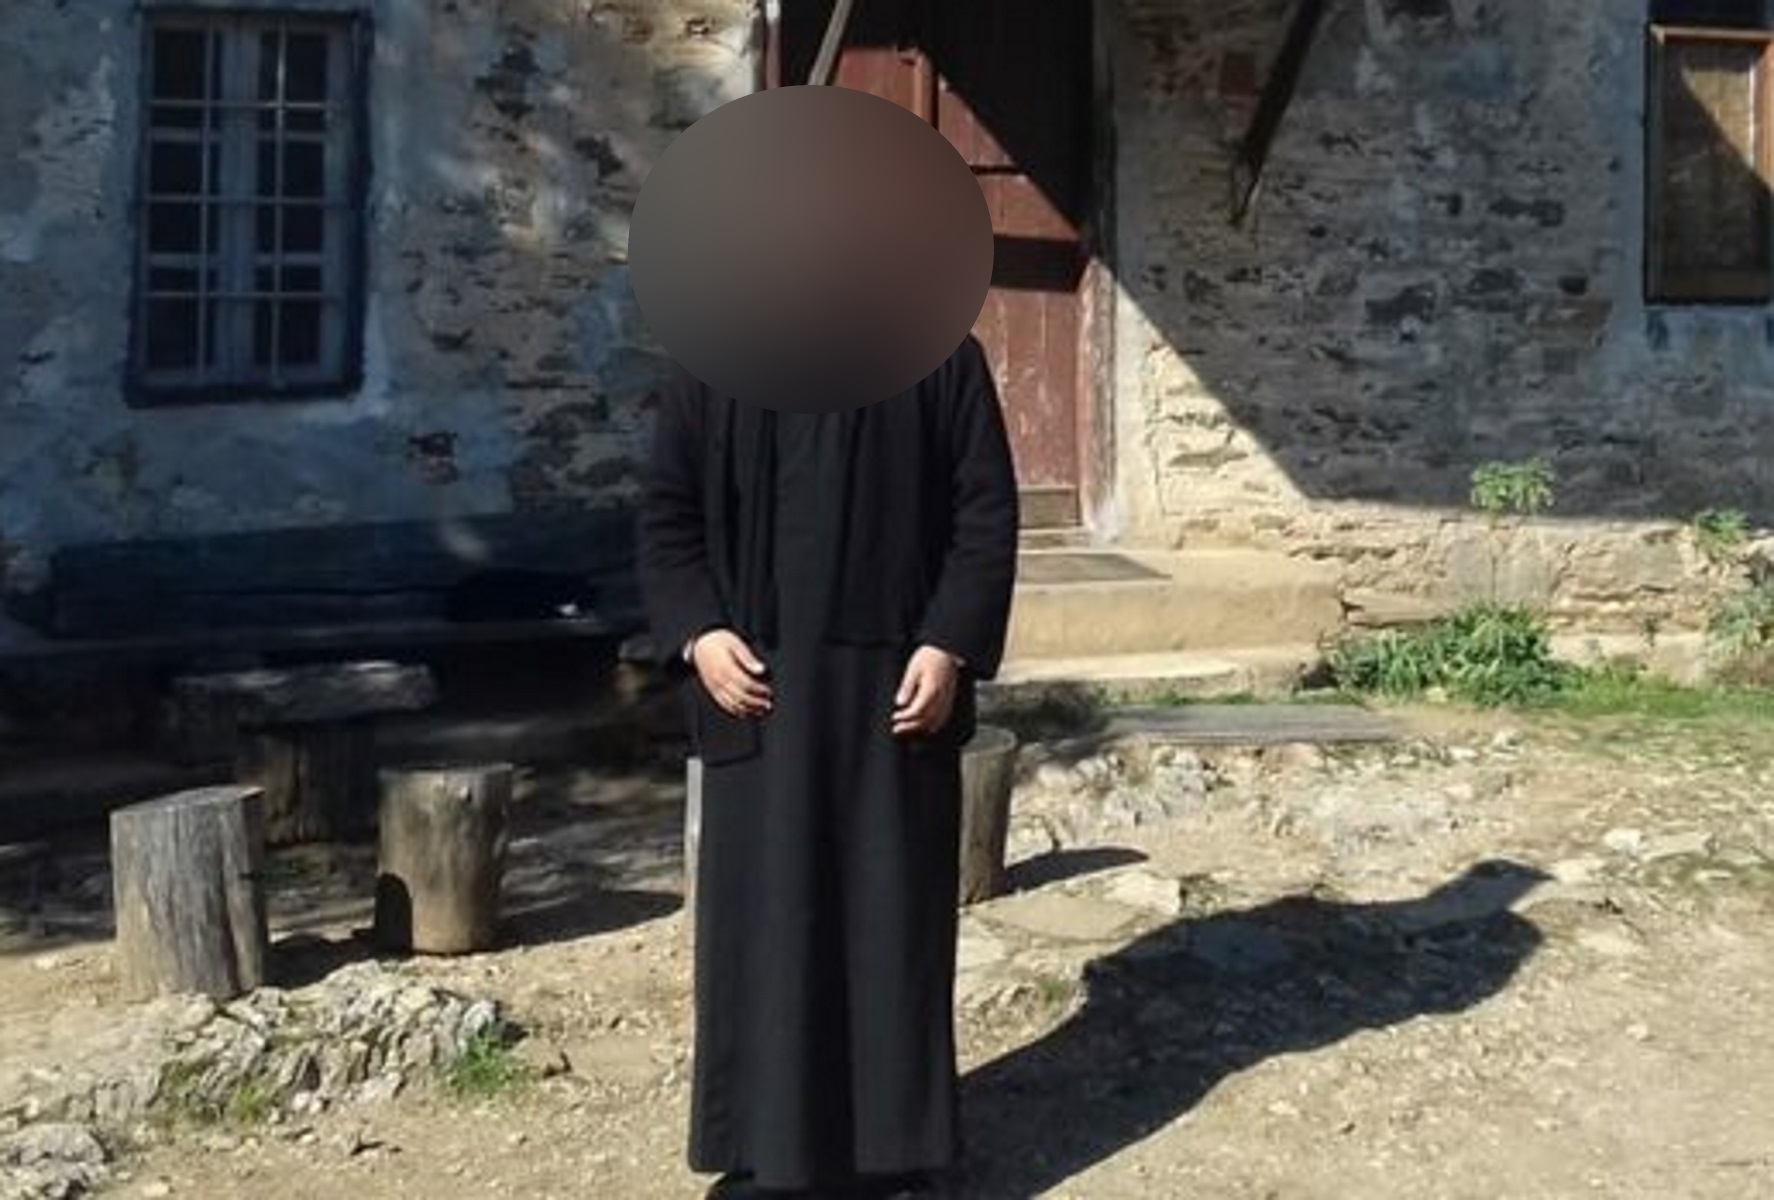 Επίθεση με βιτριόλι στην Μονή Πετράκη: «Πάσχω από μανιοκατάθλιψη, ζητώ συγγνώμη» λέει ο παπάς στην απολογία του